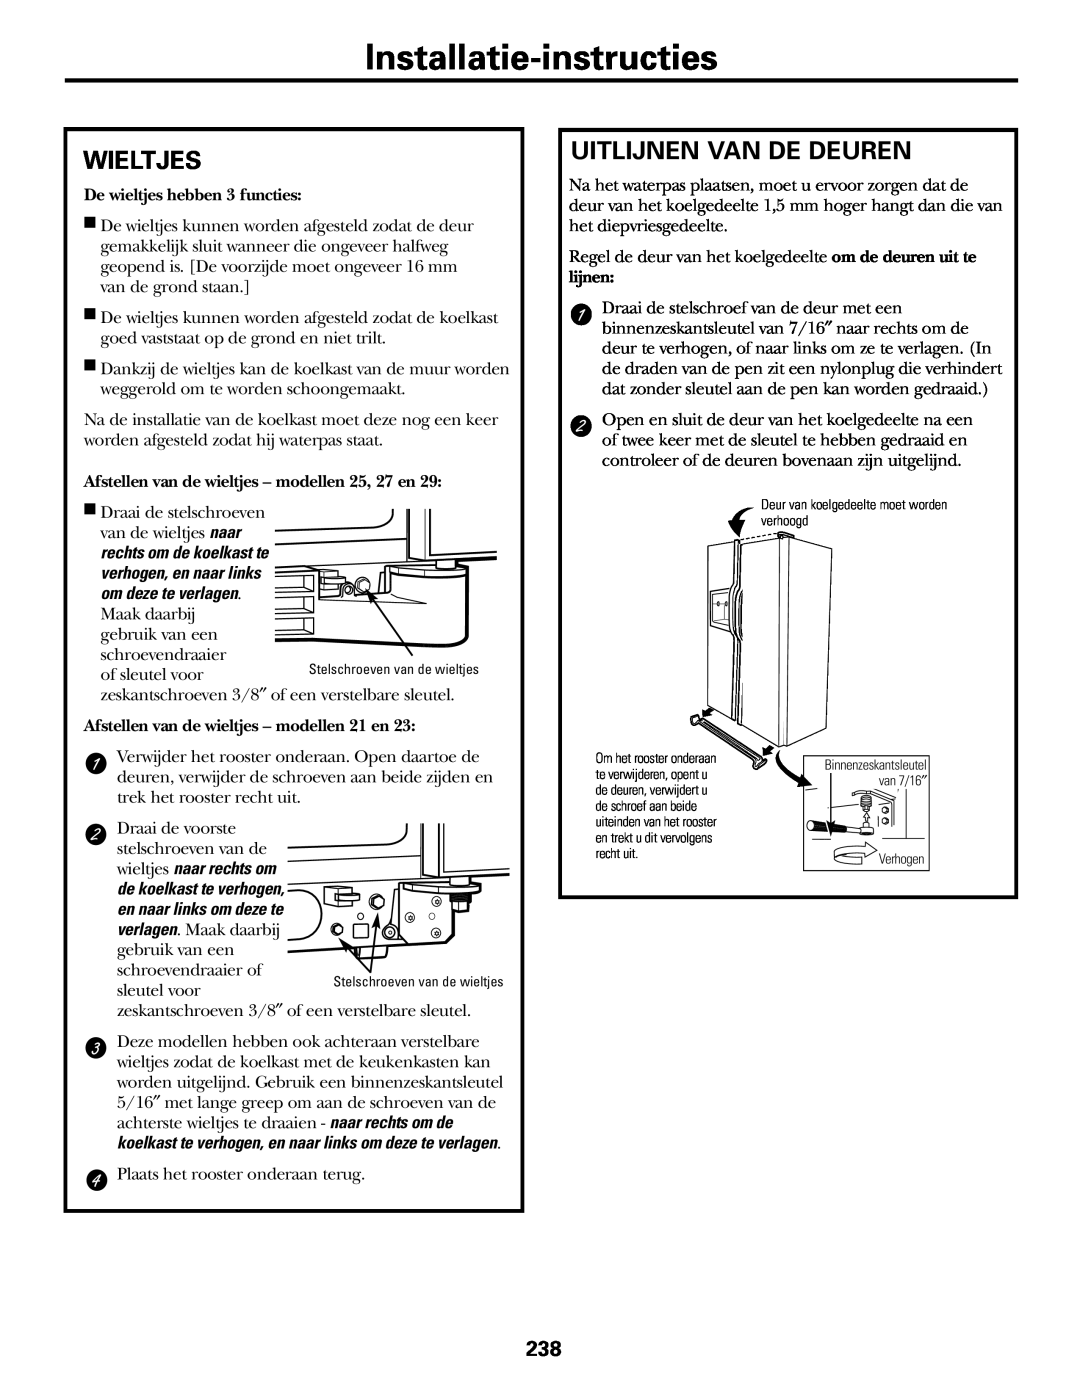 GE 200D2600P031 operating instructions Installatie-instructies, Wieltjes, Uitlijnen Van De Deuren 